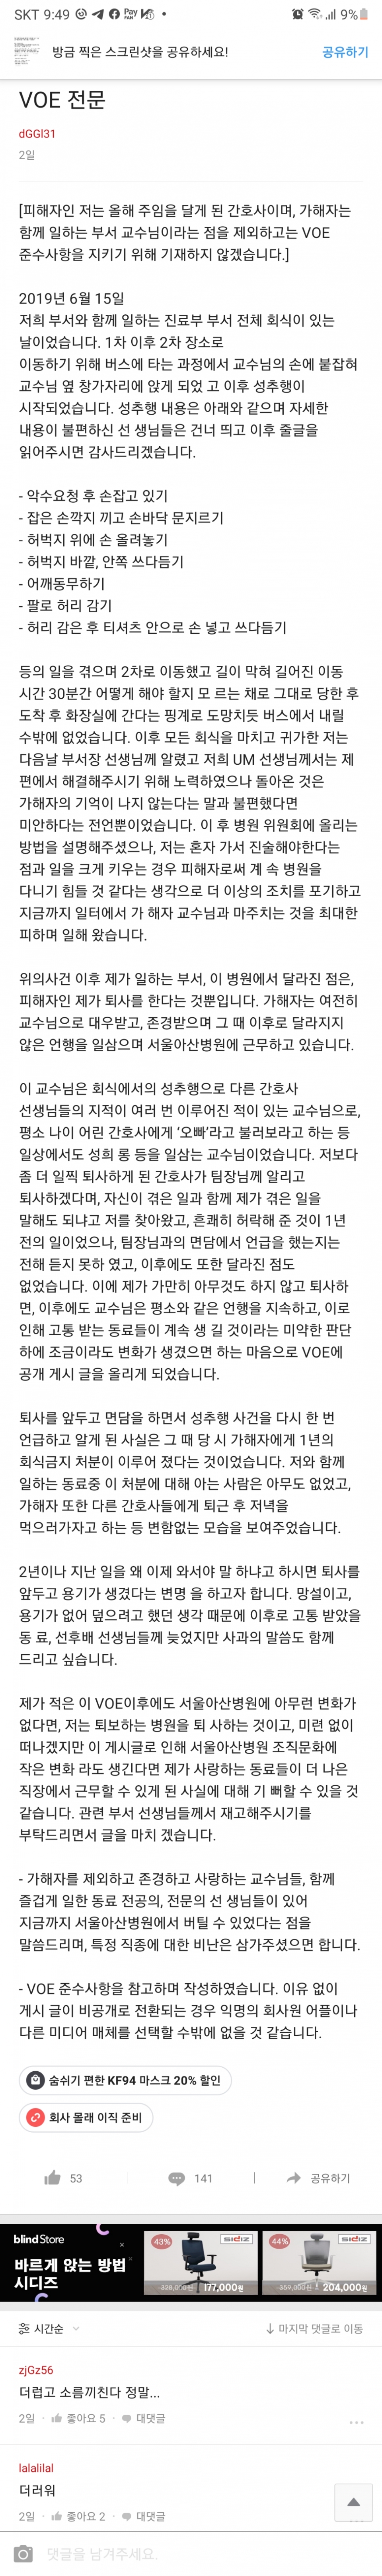 서울아산병원 익명 게시판에 올라왔다가 삭제됐다는 피해자 B간호사가 올린 글의 원문과 댓글.